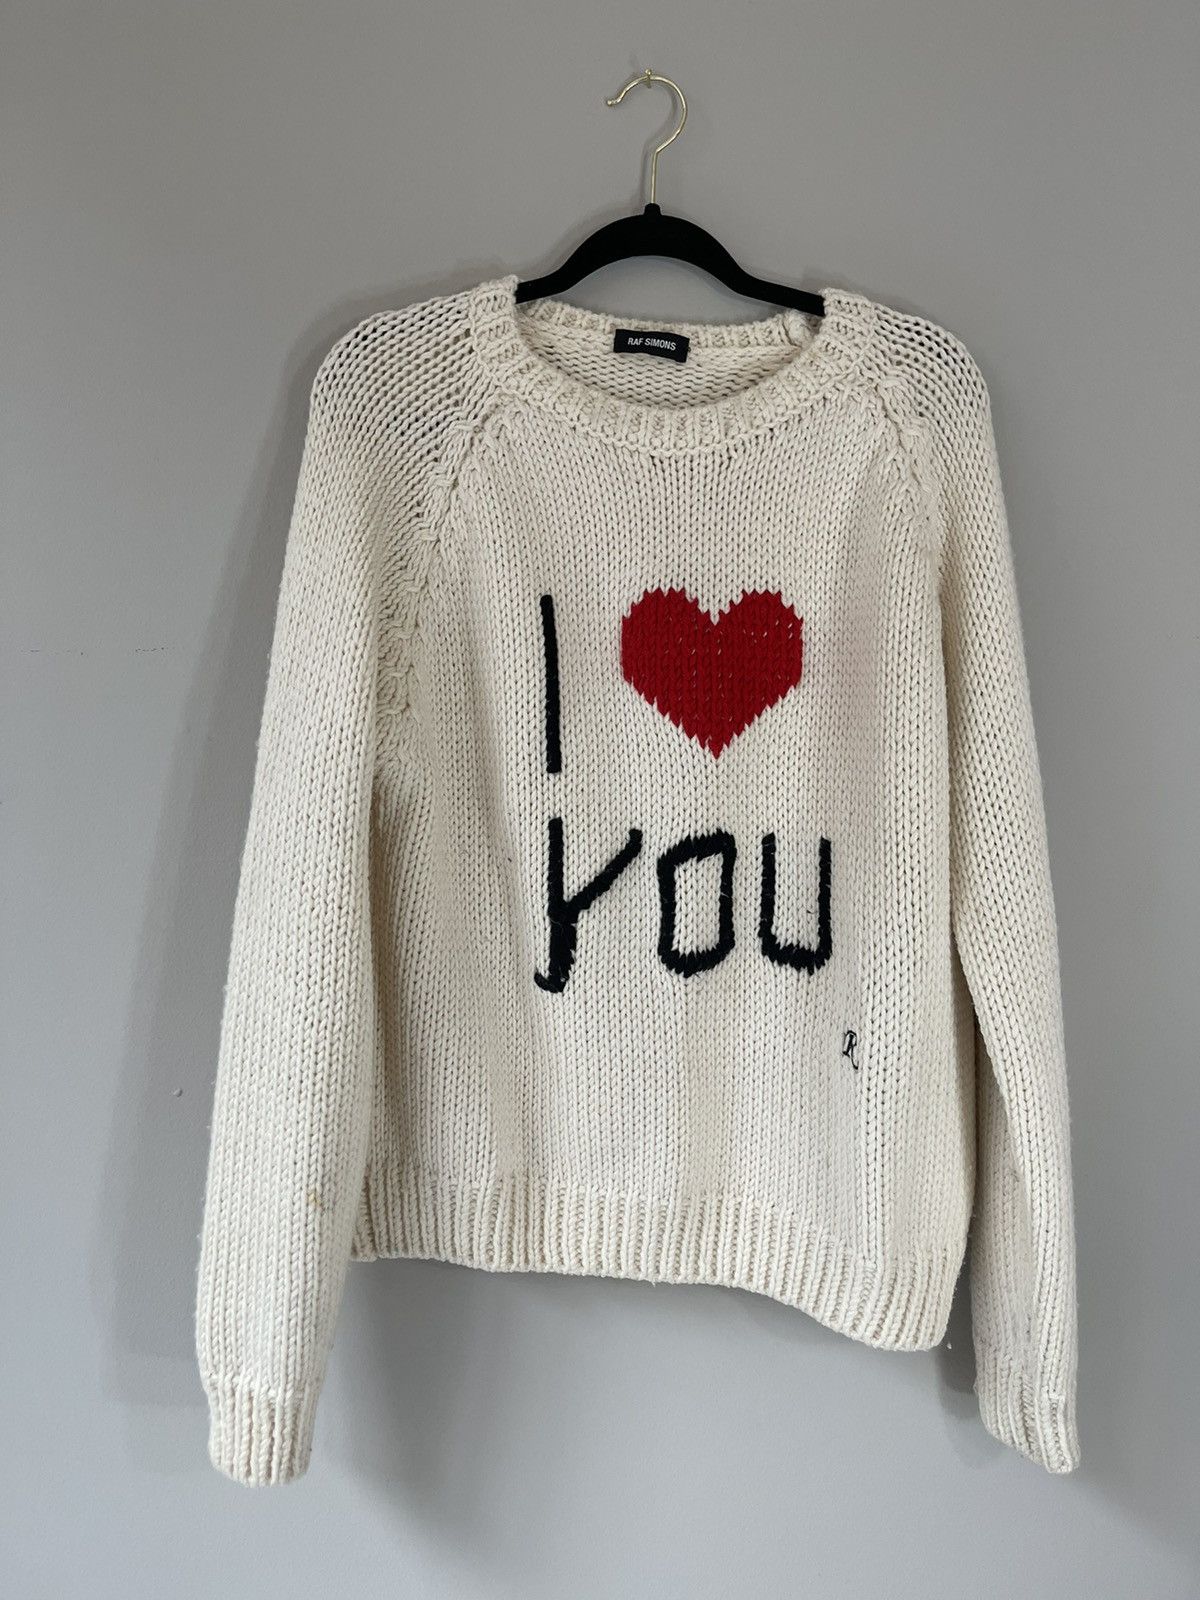 Raf Simons Raf Simons I Love You Sweater | Grailed